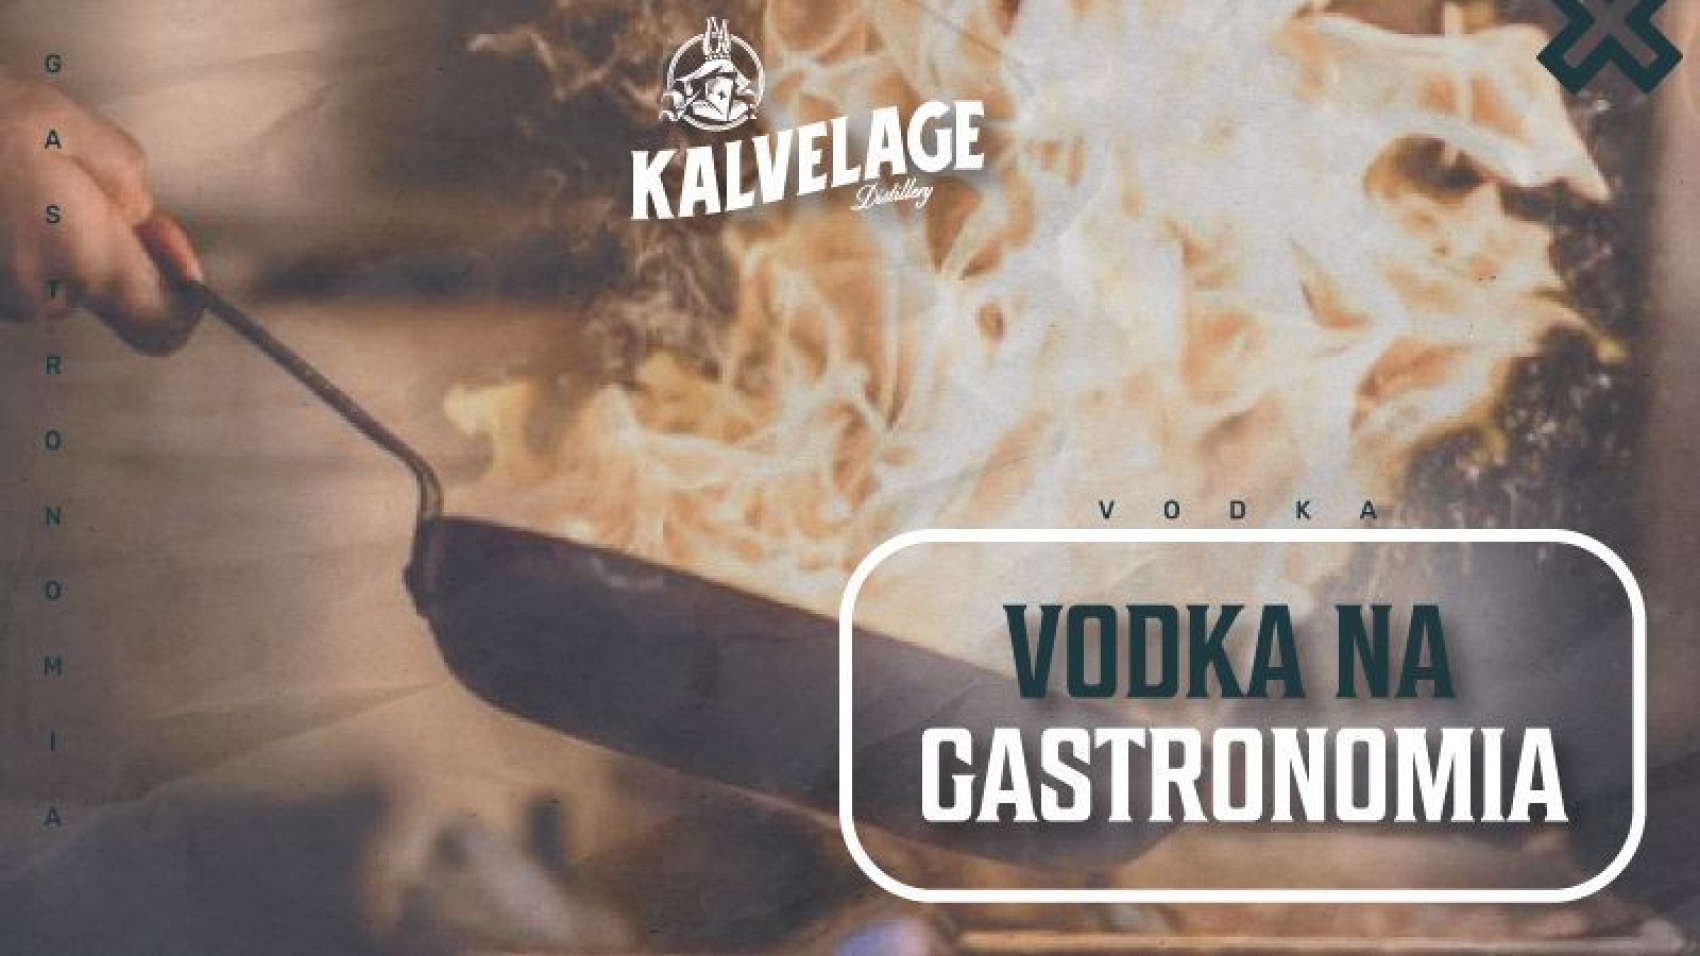 vodka na gastronomia